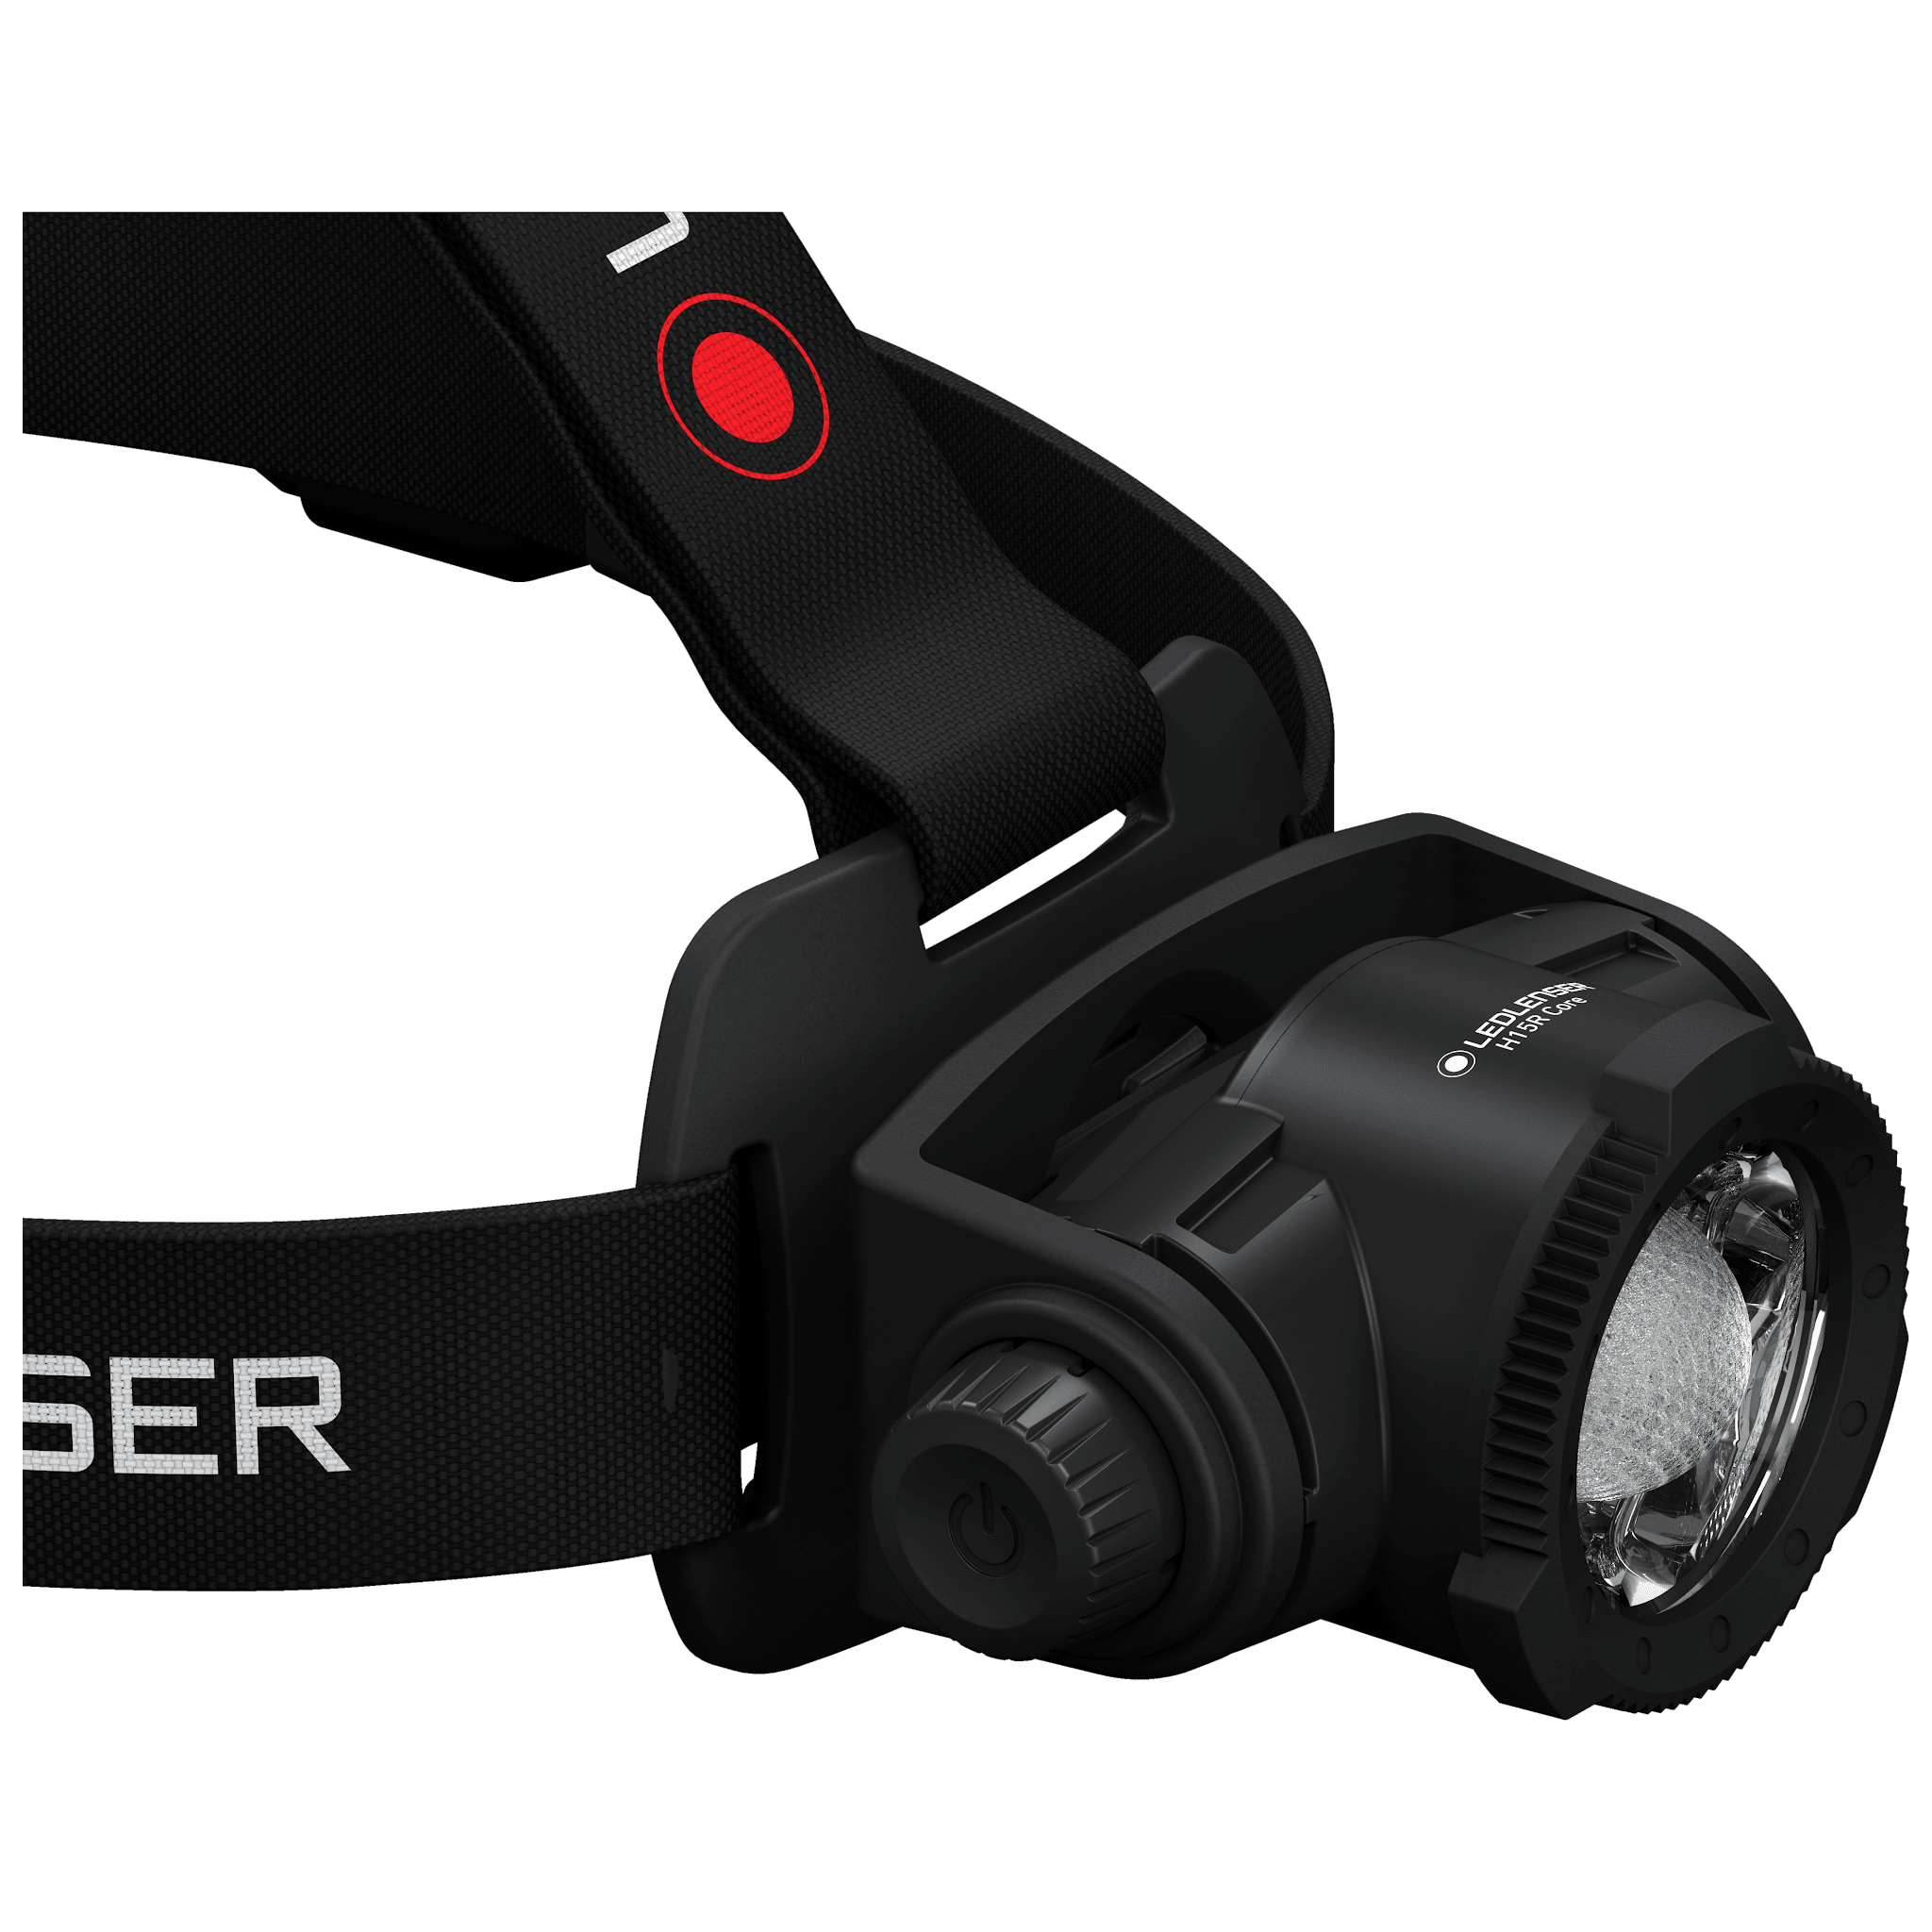 Ledlenser H15R Core Series Rechargeable Headlamp | Ledlenser USA